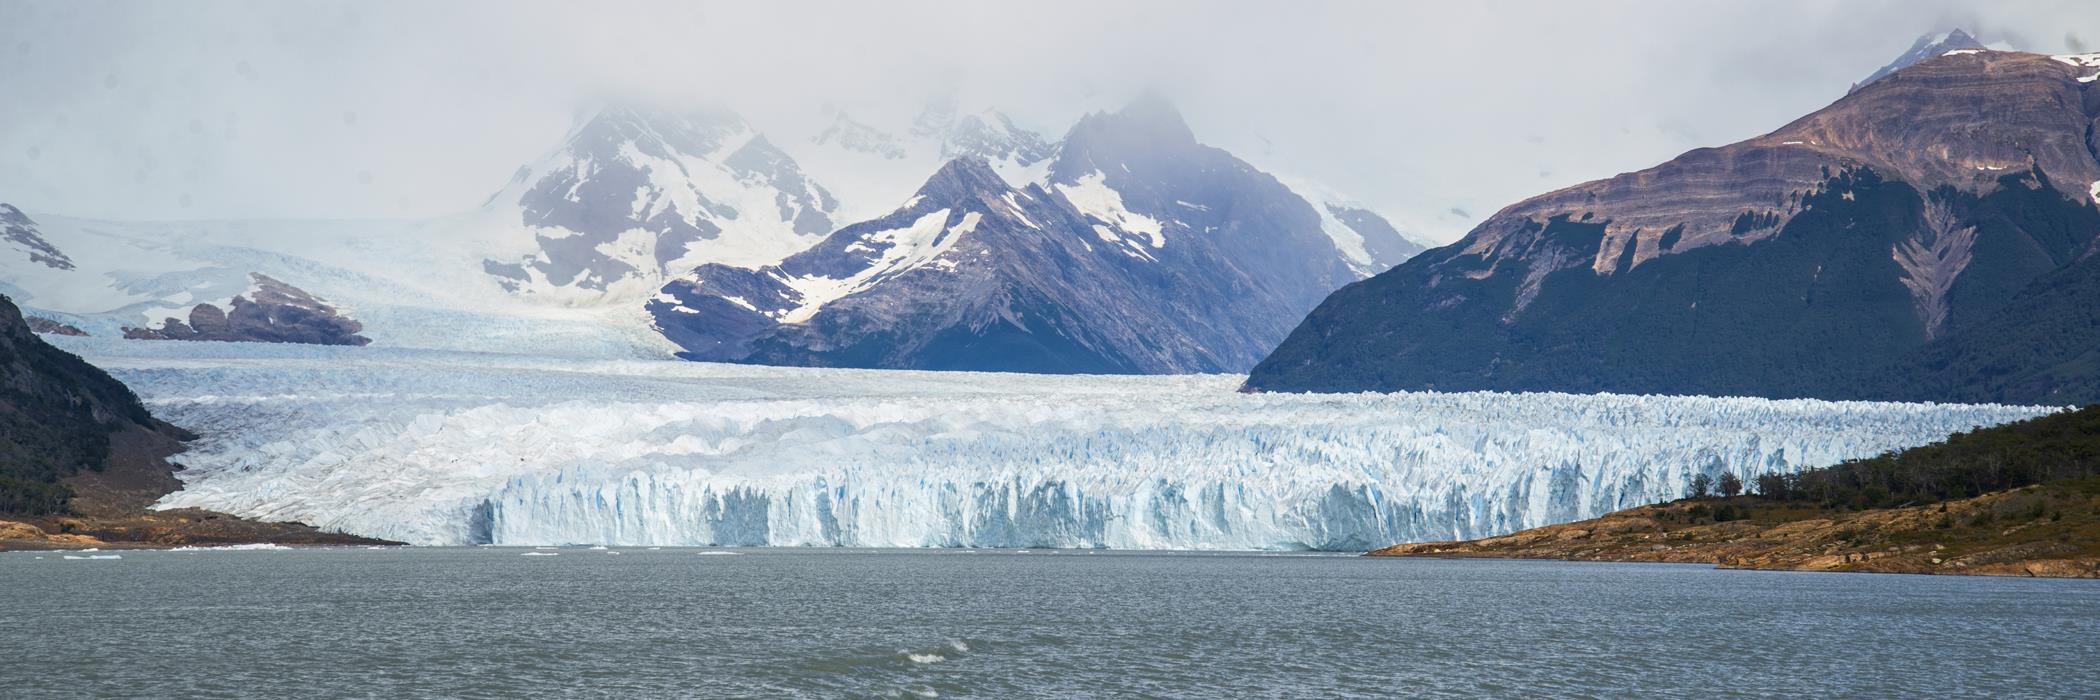 Панорама ледника Перито Морено - интерьерная фотокартина